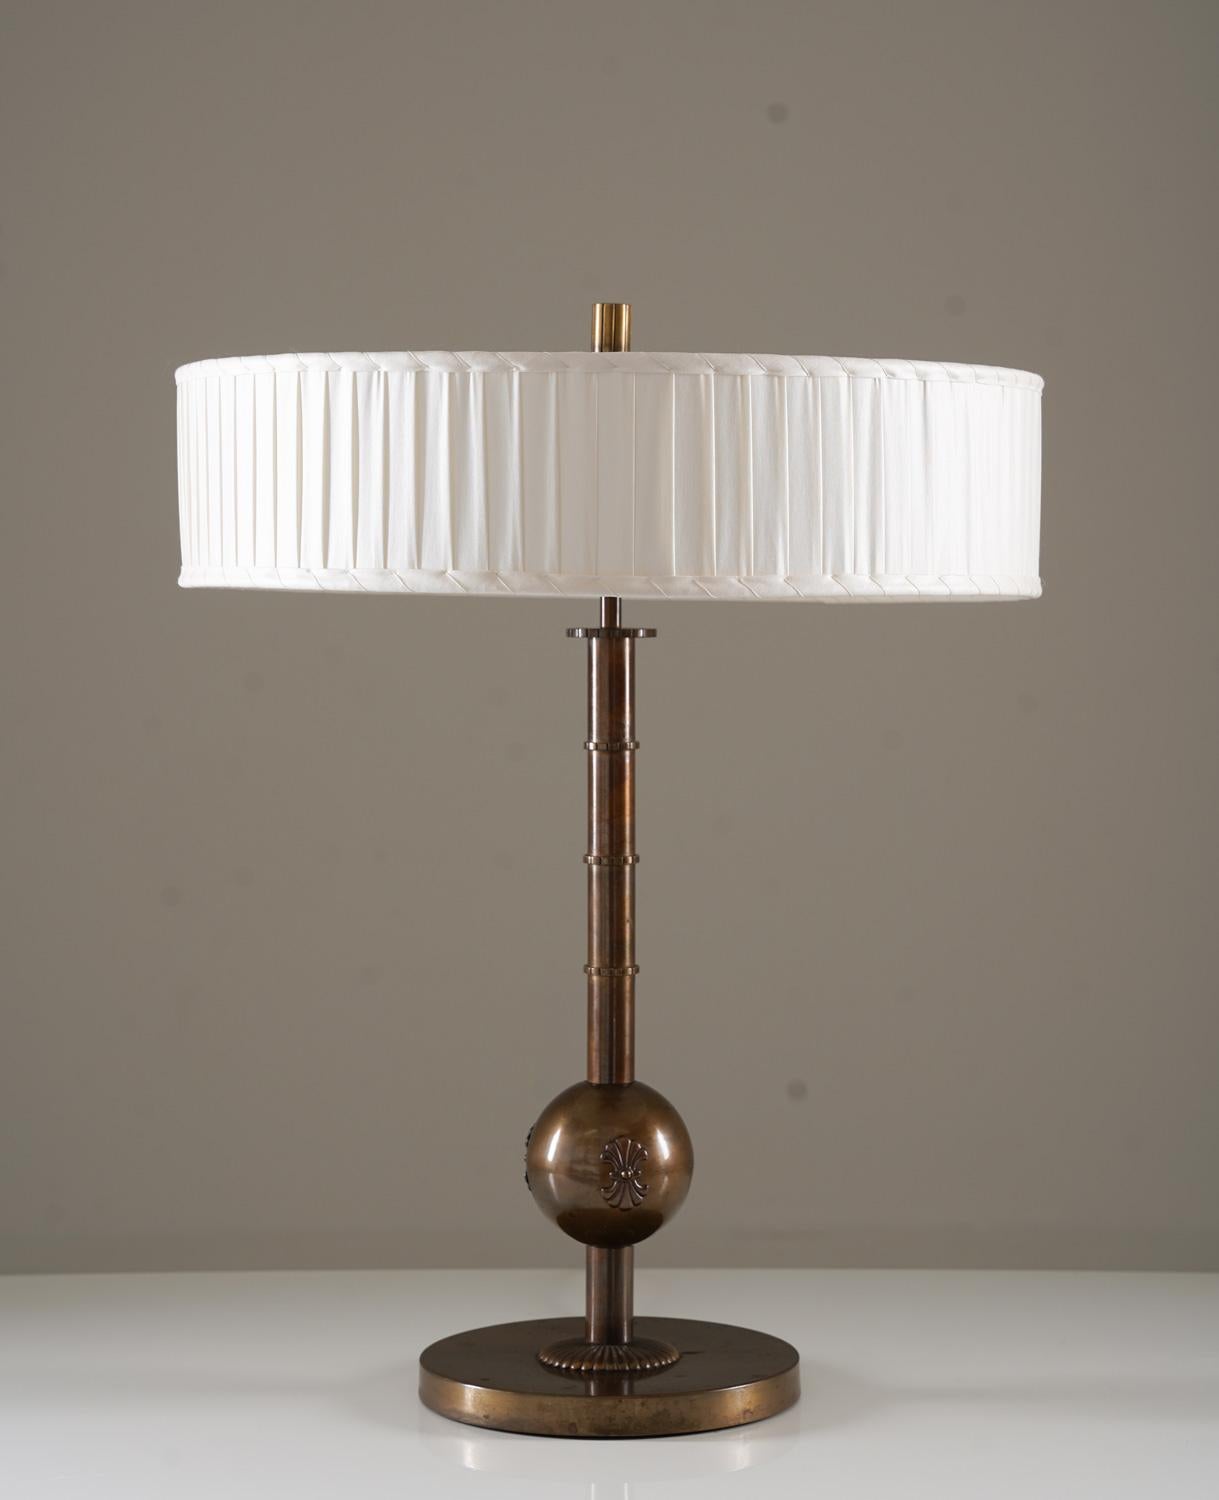 Grande lampe de table fabriquée par Böhlmarks, Suède, années 1930. 
Cette élégante lampe a été fabriquée pendant l'ère moderne suédoise et est de très haute qualité.
Il se compose d'une lourde base en laiton oxydé, supportant une tige ornementée